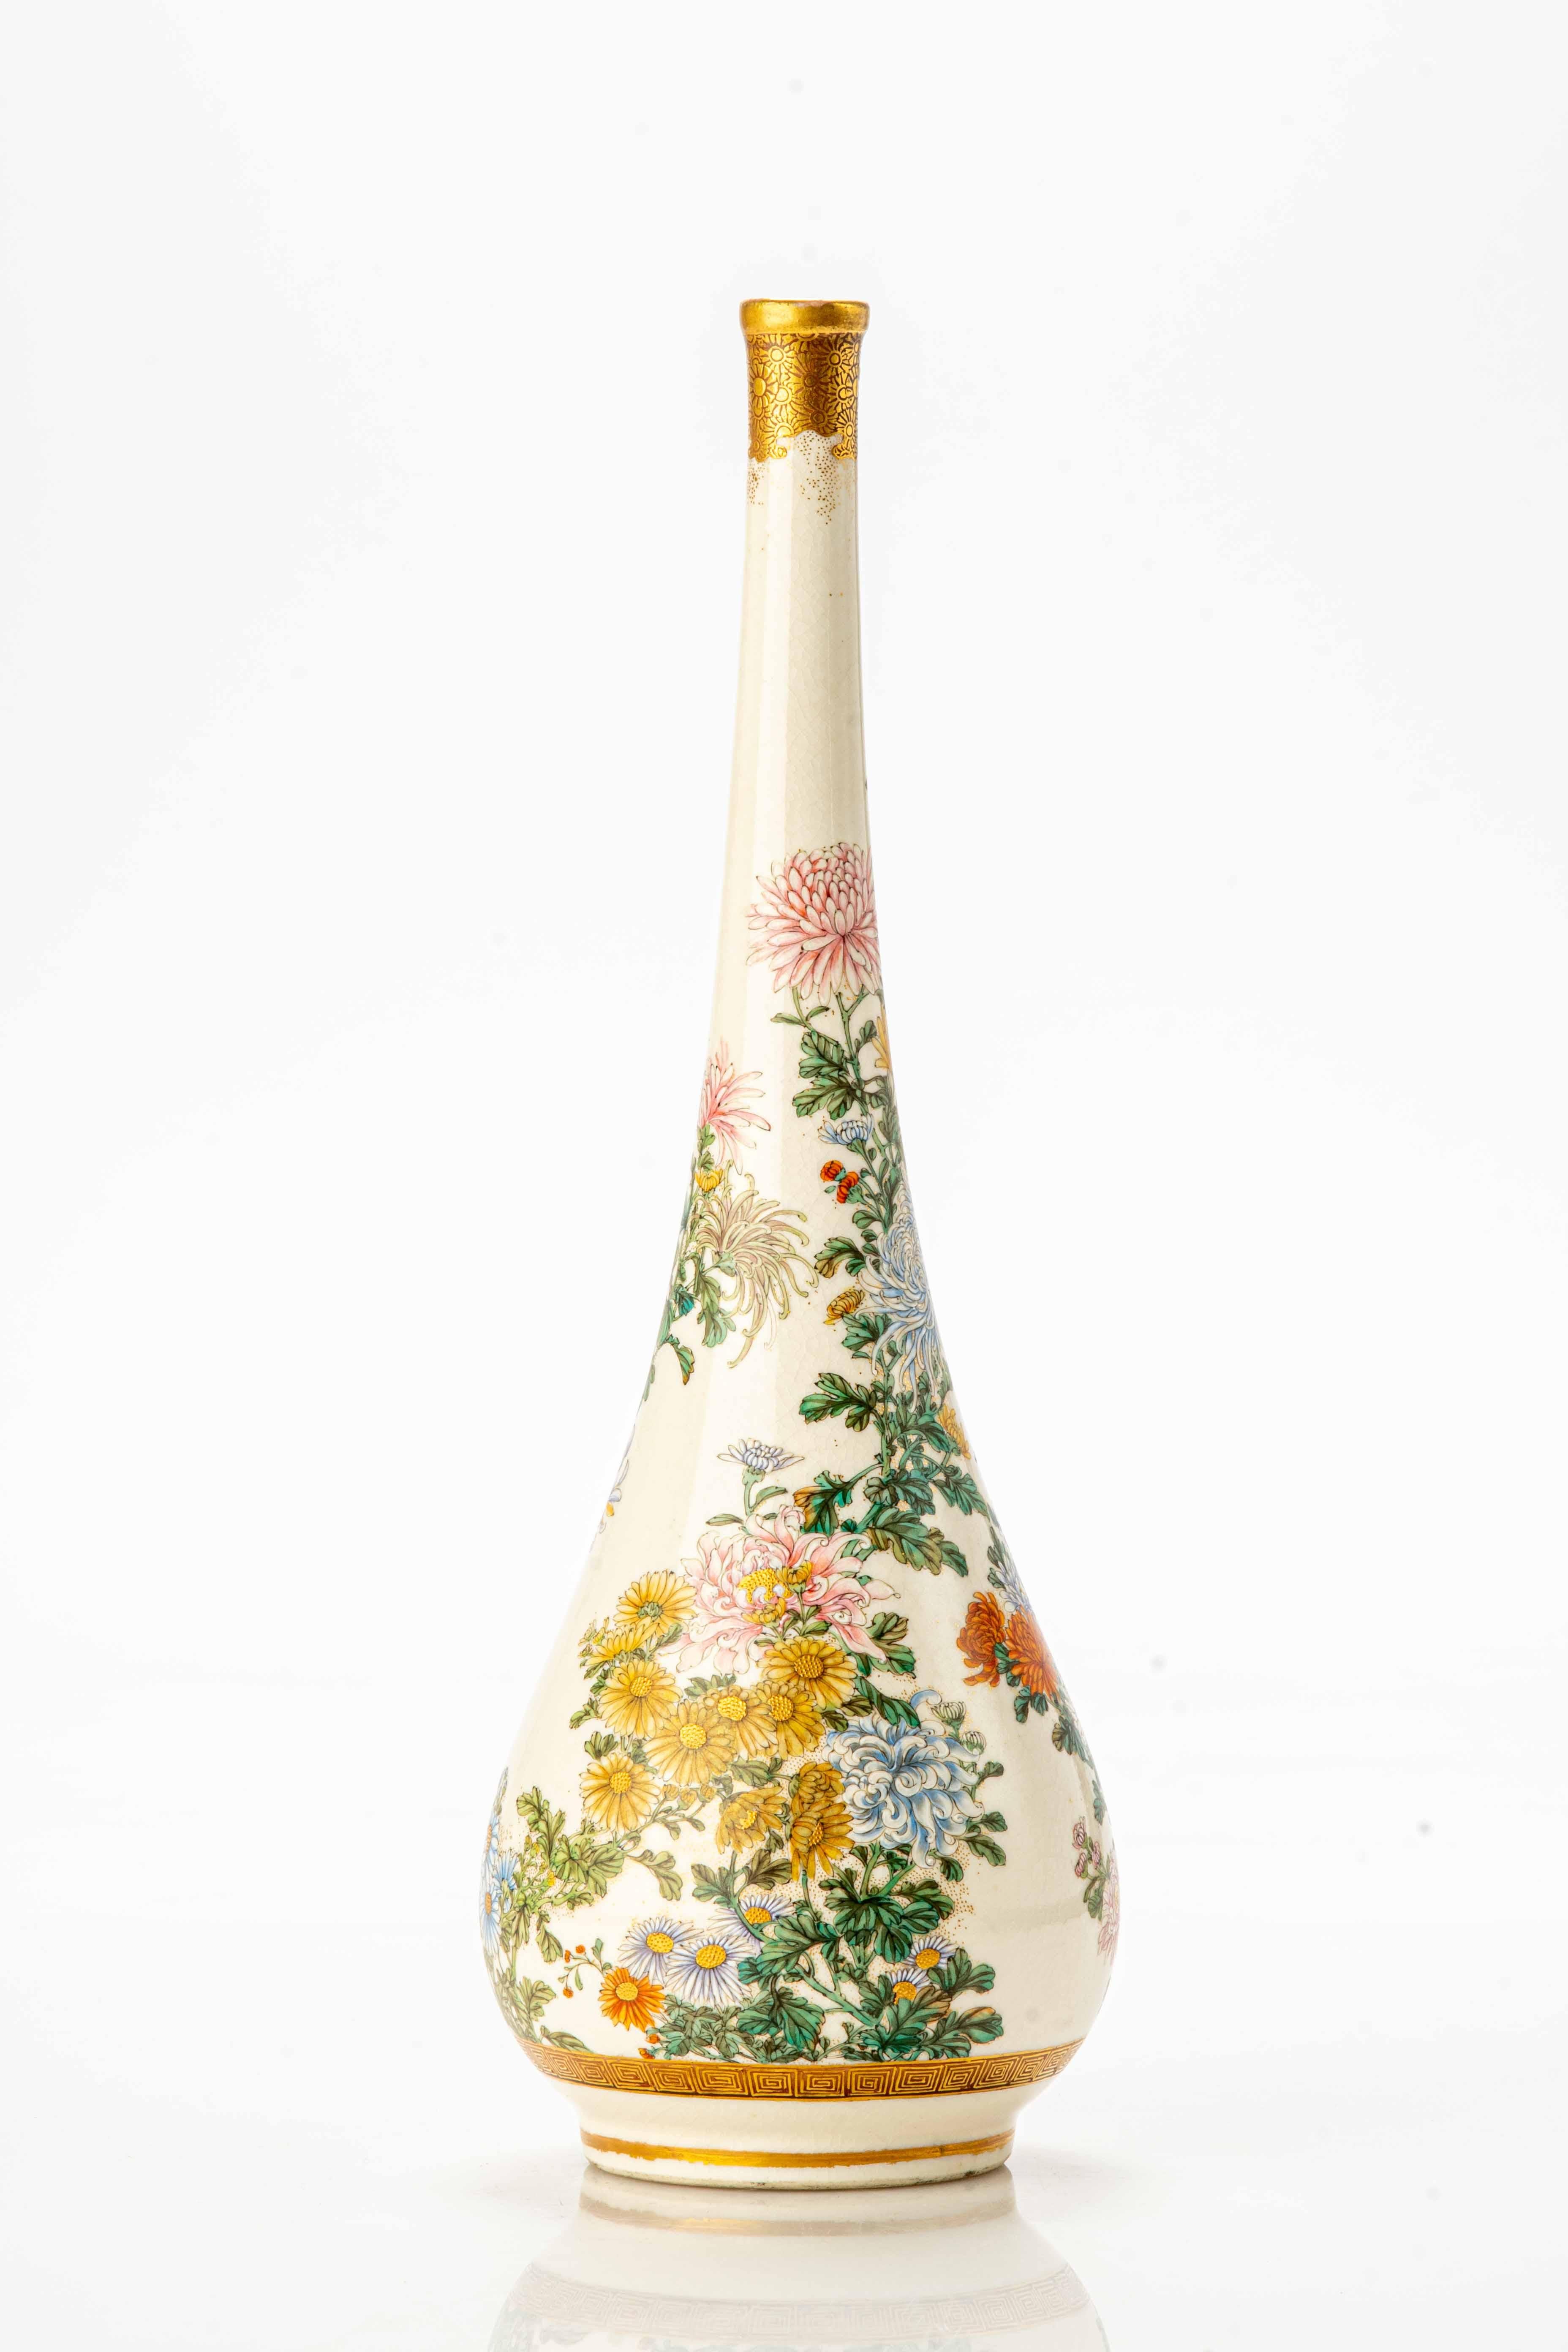 Satsuma-Vase, mit schlankem Hals und Endstück aus reinem Gold, verziert mit einem Garten aus Chrysanthemen, mit Emaille und Gold im Relief hergestellt.

Mit Präzision und Detailgenauigkeit werden verschiedene Chrysanthemenarten abgebildet, die sich